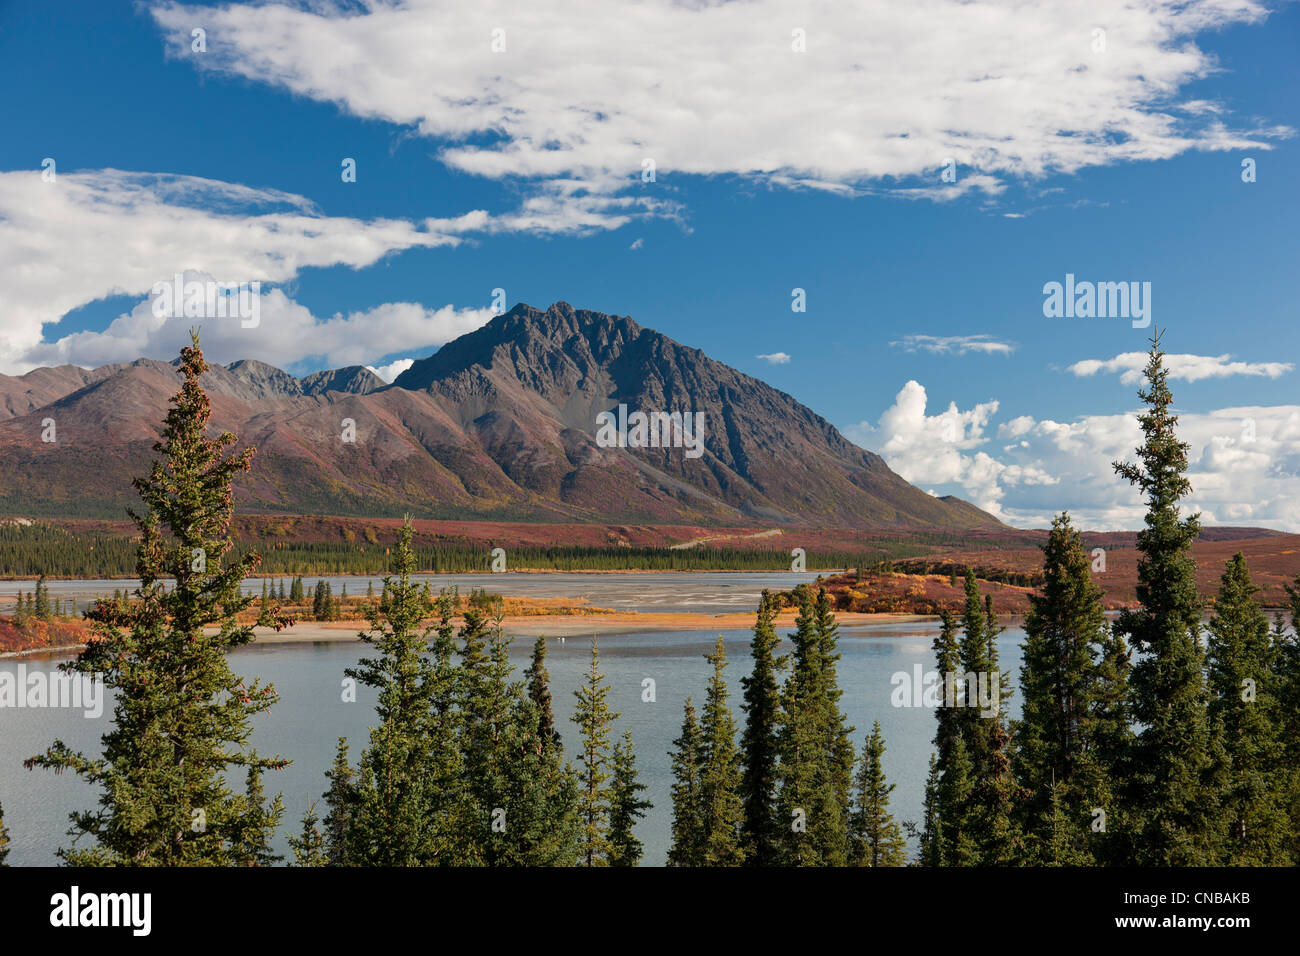 Vue panoramique de la rivière Susitna près de l'autoroute, l'intérieur de l'Alaska, Denali, automne Banque D'Images